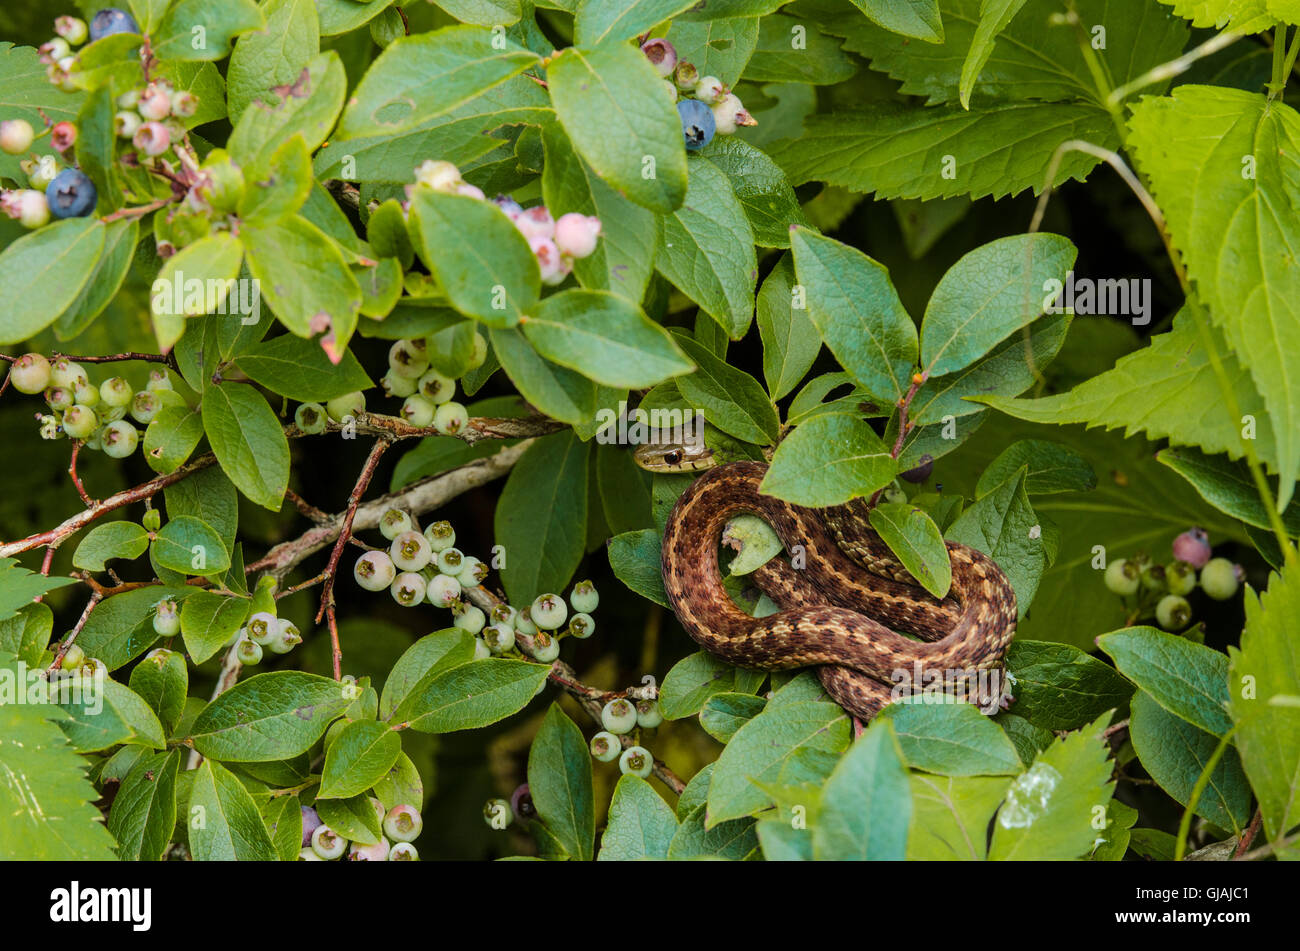 Garter Snake Hiding in Blueberries Stock Photo